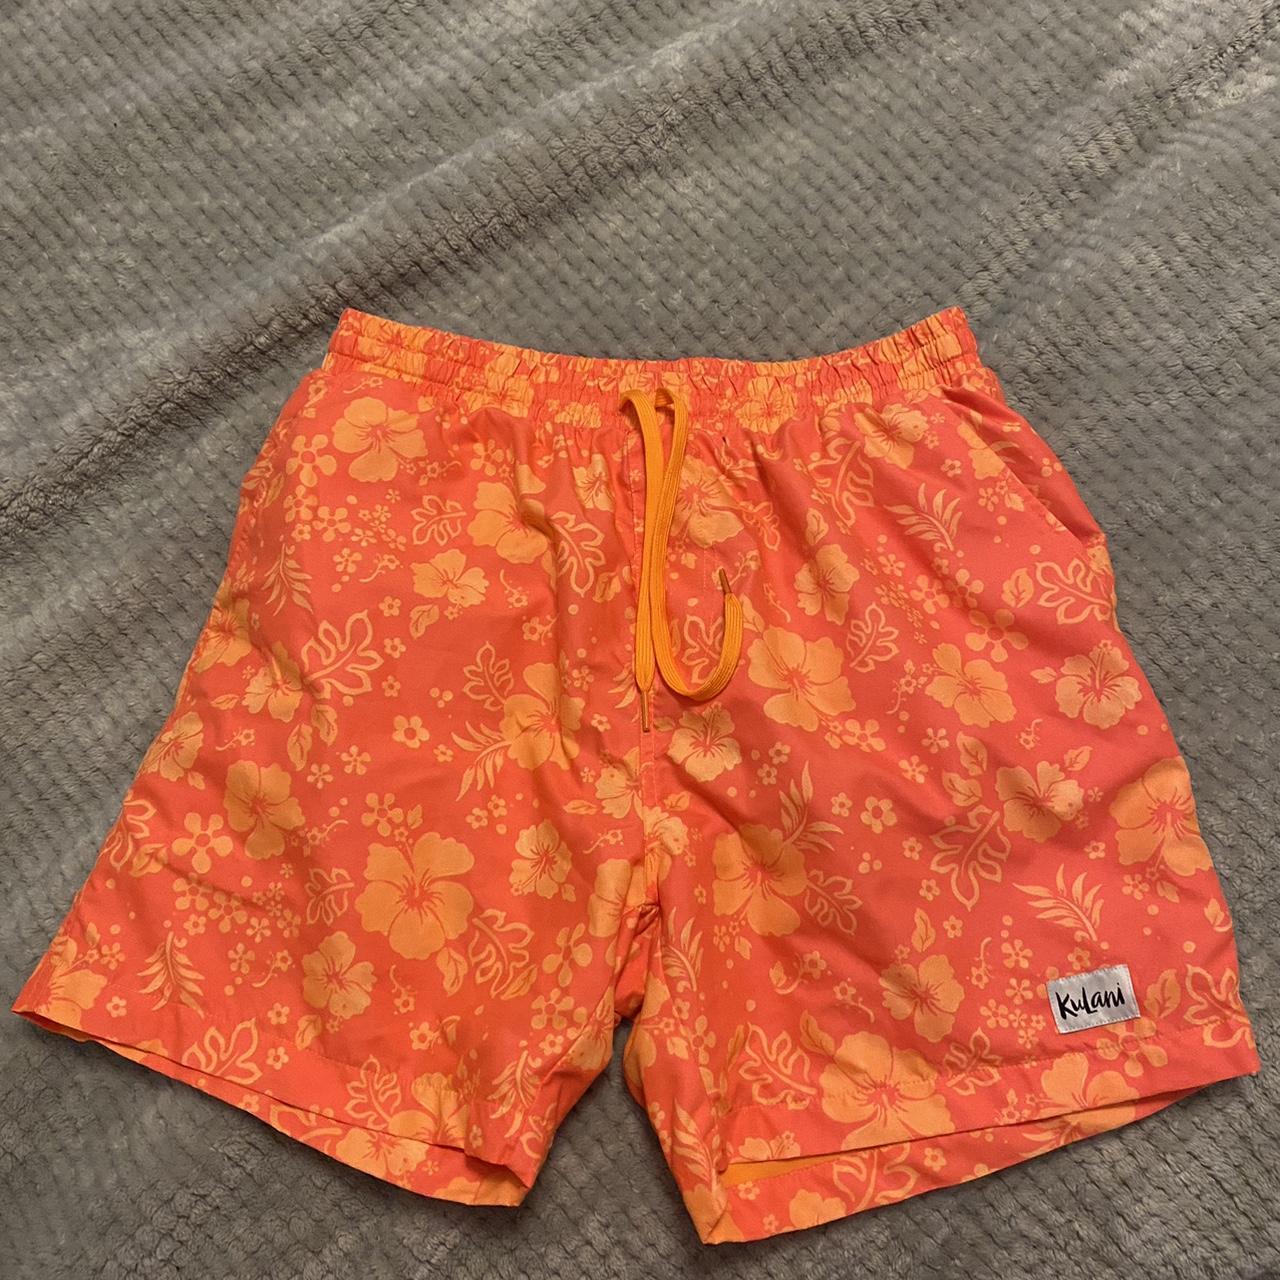 Kulani Kinis Men's Orange Swim-briefs-shorts | Depop